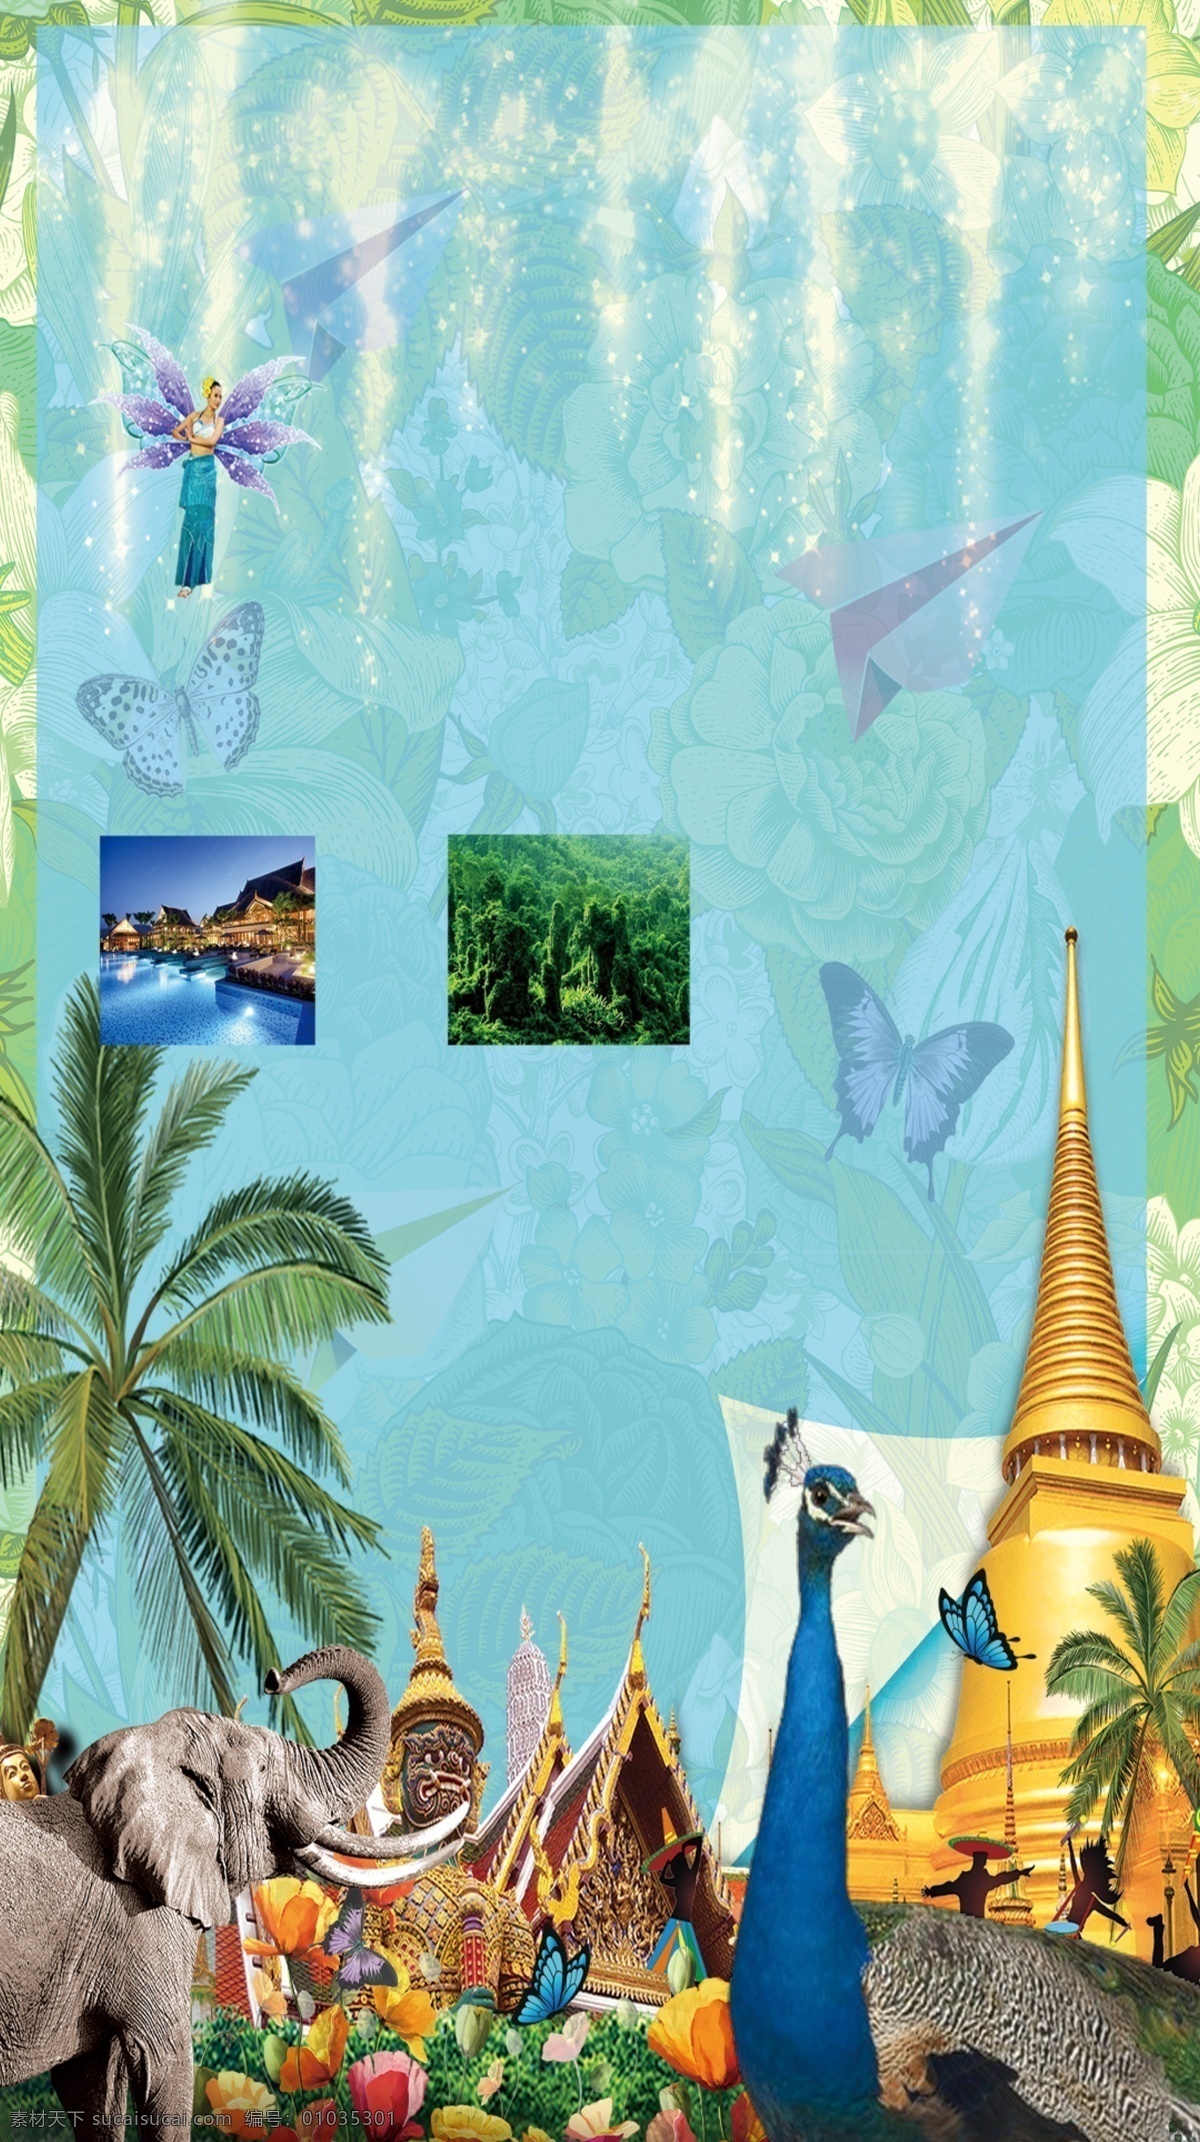 泰国 大象 动物 海报 背景 佛教 曼谷 普吉岛 人妖 泰国风情 泰国佛像 泰国宫殿 泰国旅游背景 泰国寺庙 泰国印象 泰国自助游